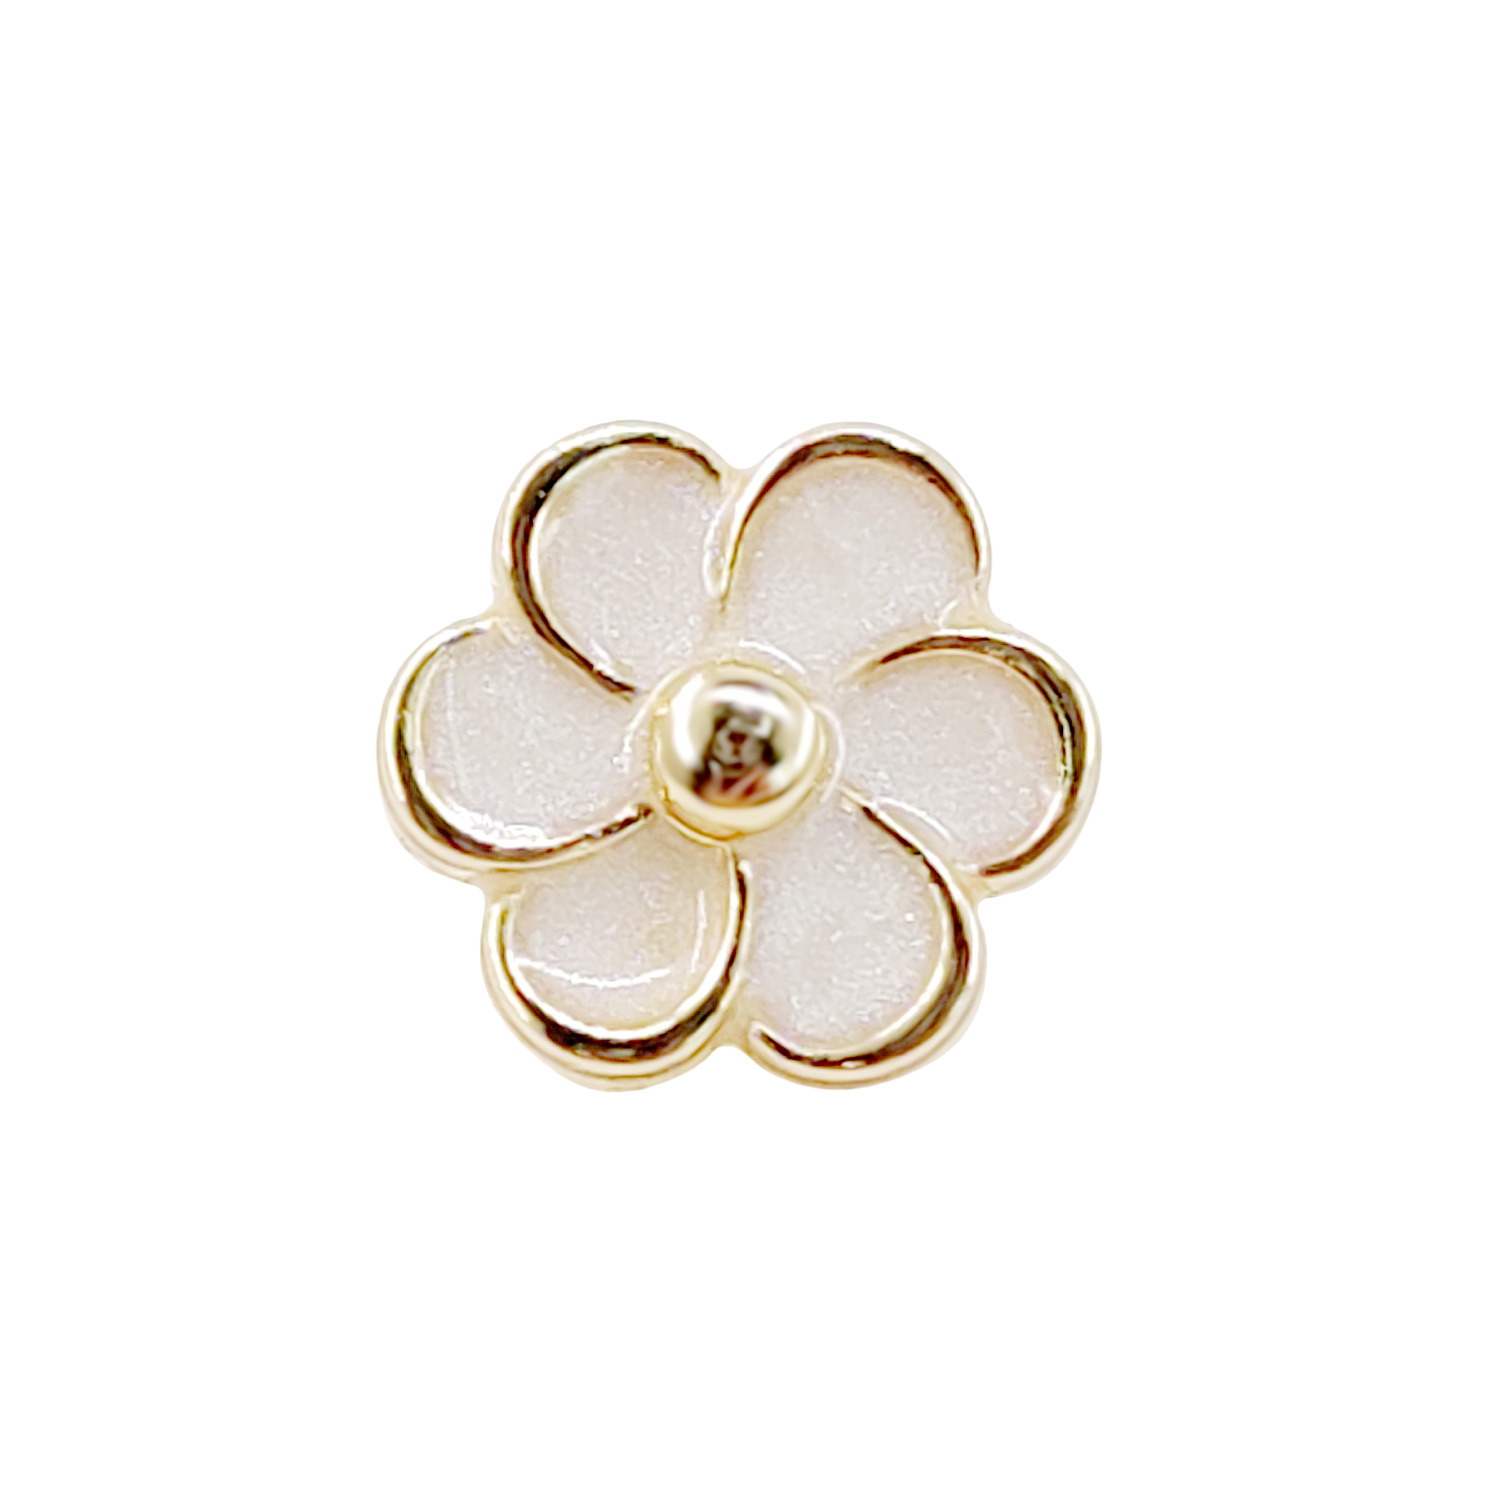 Craftisum Enamel Golden Plum Flower Shank Sewing Buttons 20 Pcs - 11.5mm, 15/32"